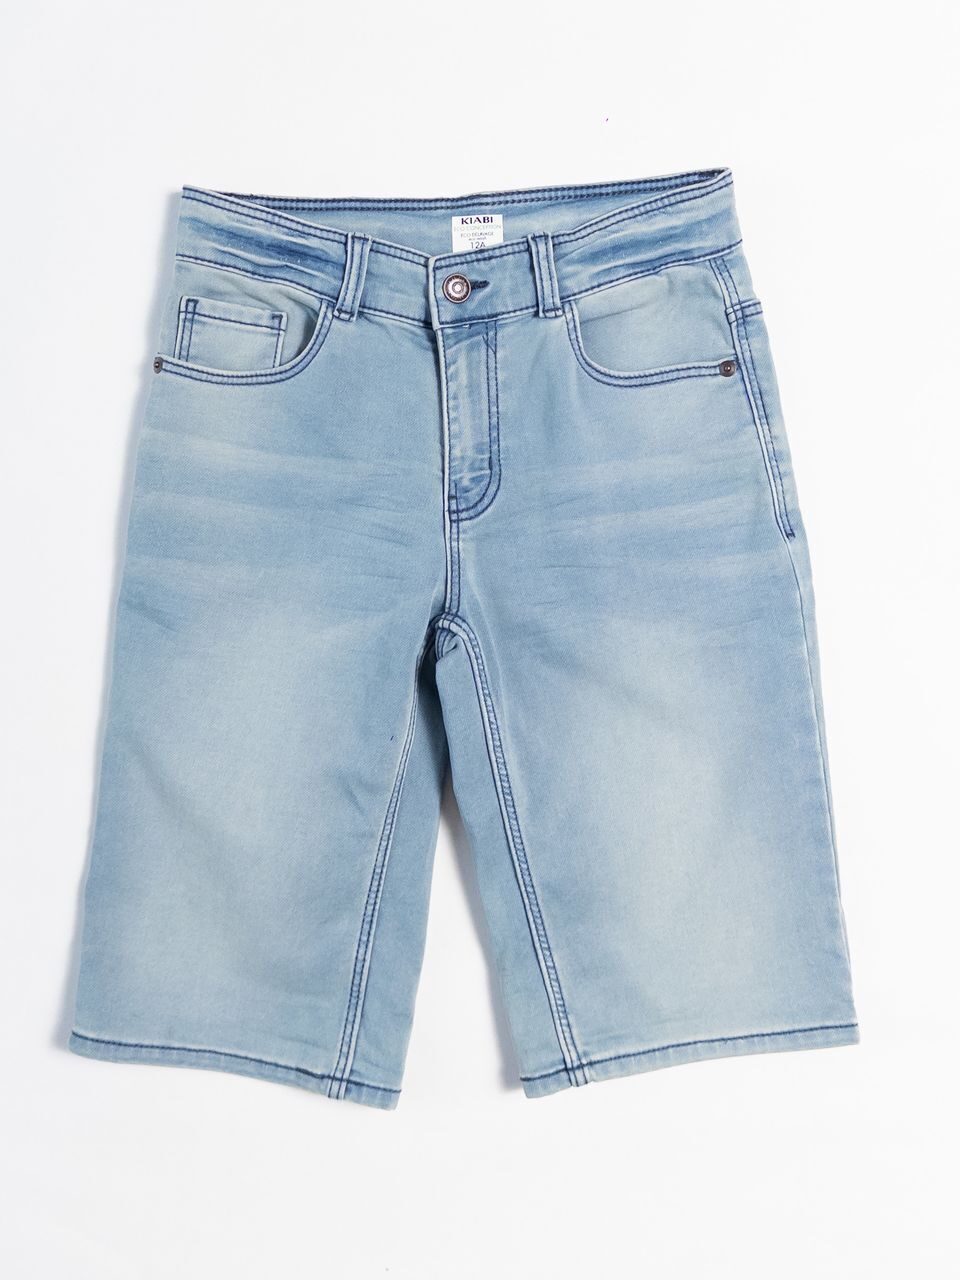 Шорты джинсовые для мальчика цвет голубой с регулировкой в поясе на рост 144-155 см 12 лет KIABI